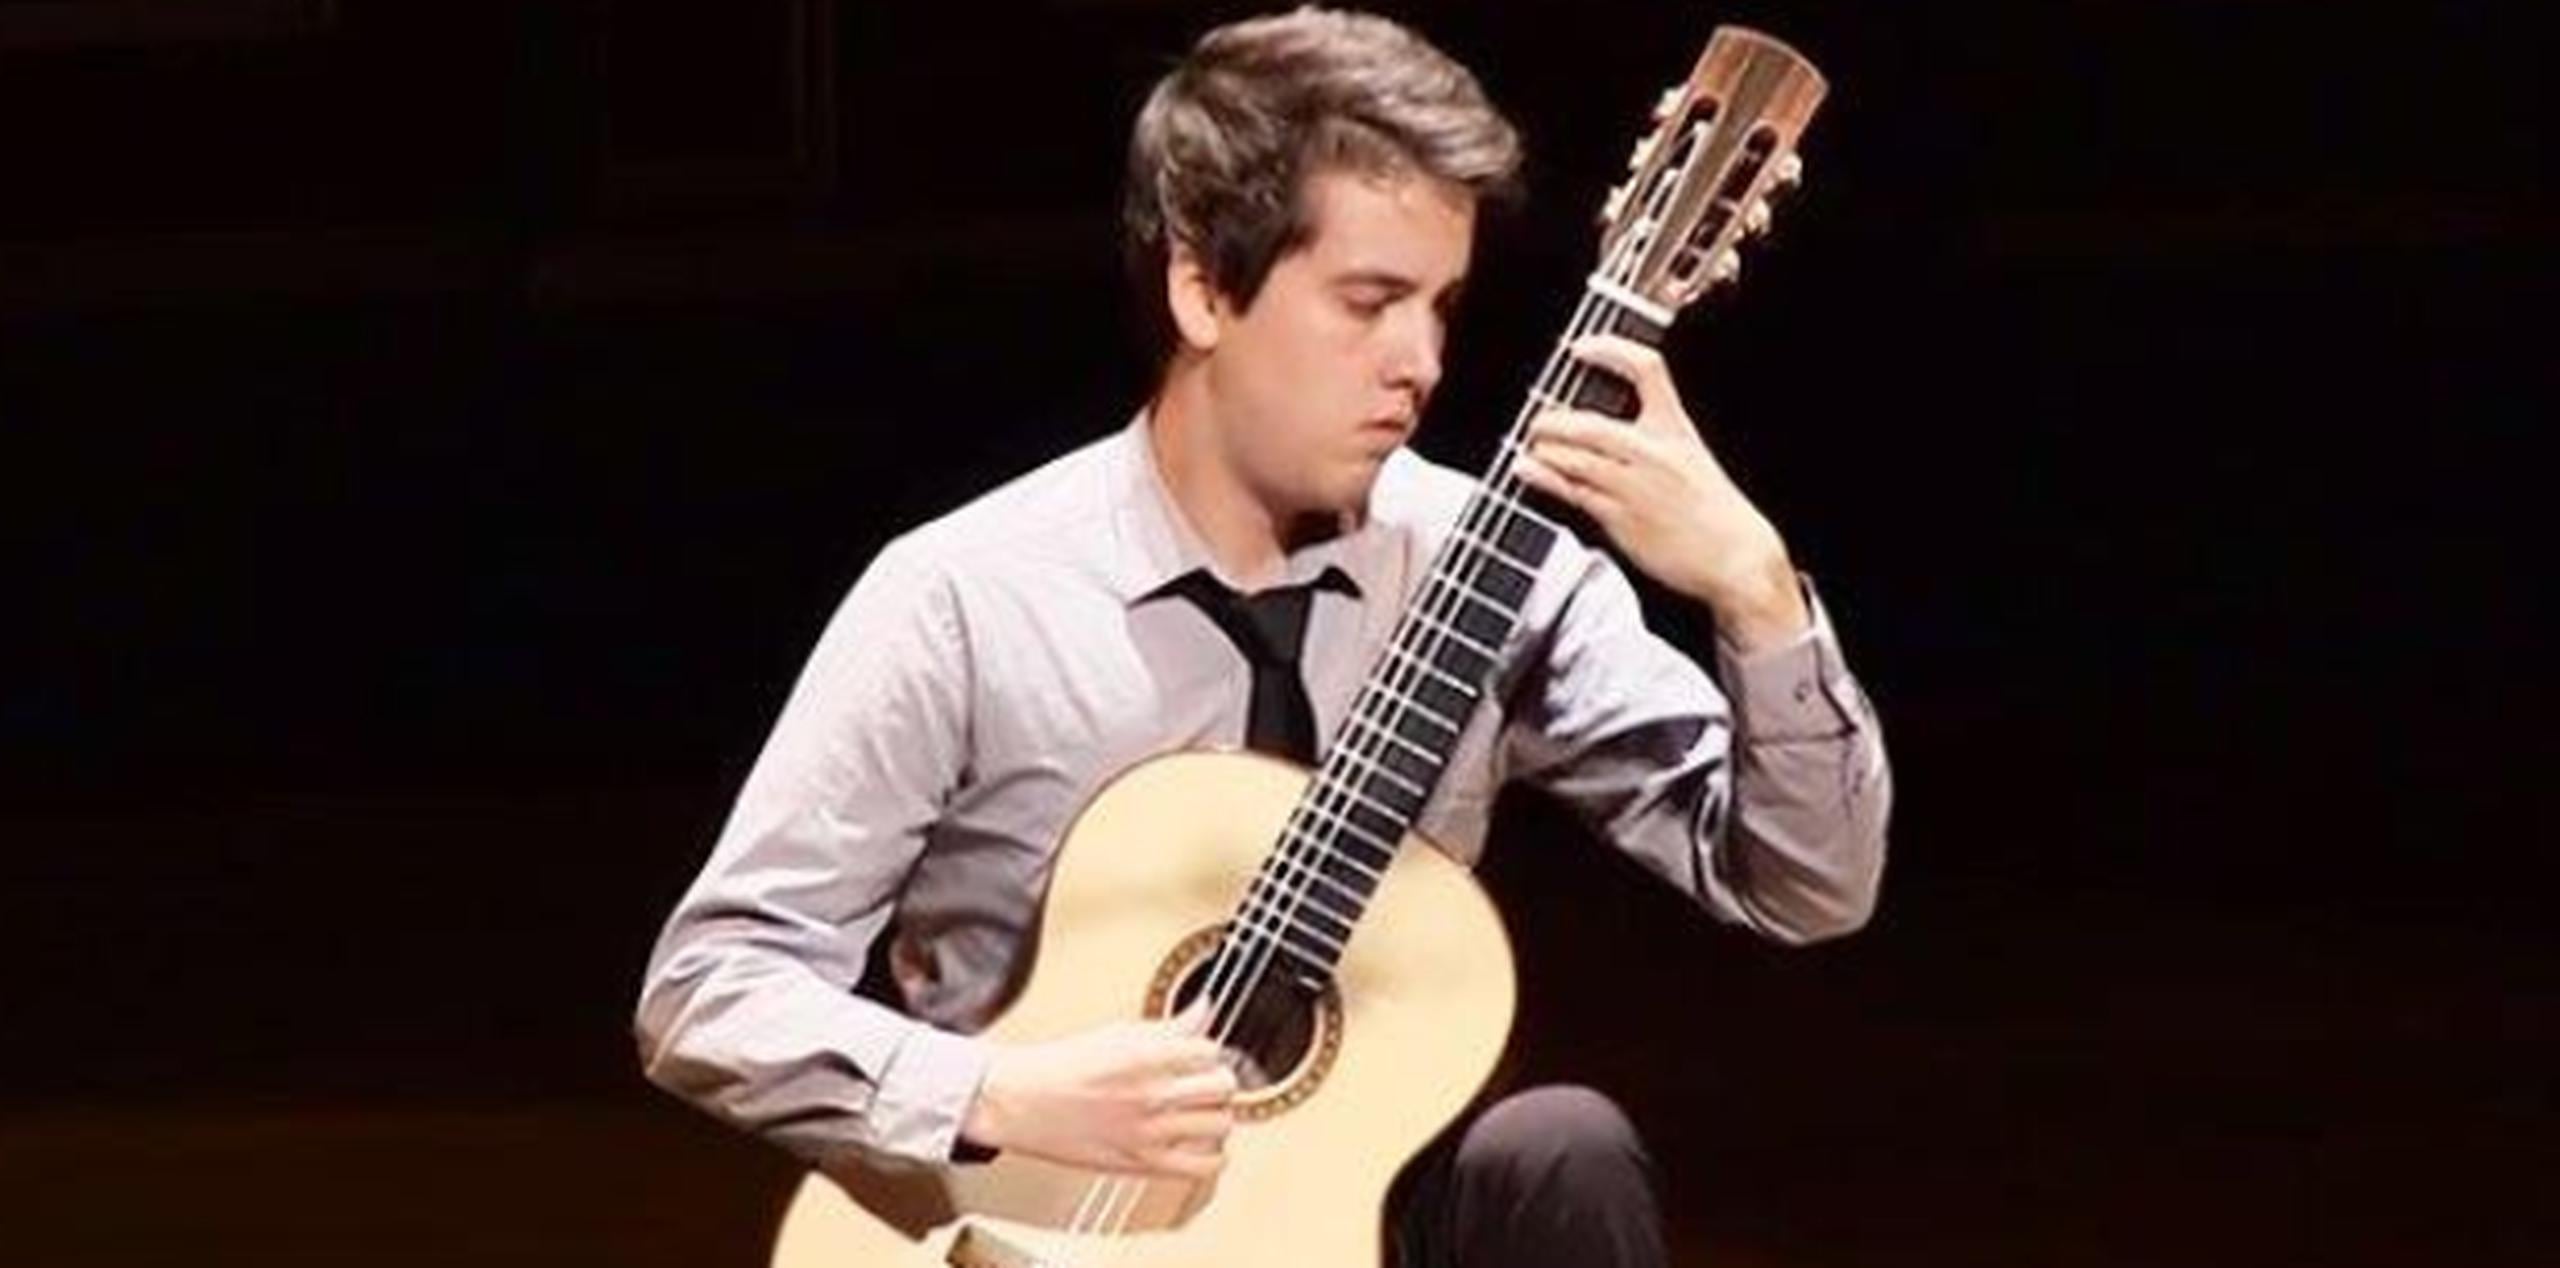 Xavier Jara se presentará en un concierto especial de la Serie Nuevos Virtuosos Fili G. Gill el domingo 12 de noviembre a las 5:00 pm en el Museo de Arte Contemporáneo de San Juan. (suministrada)